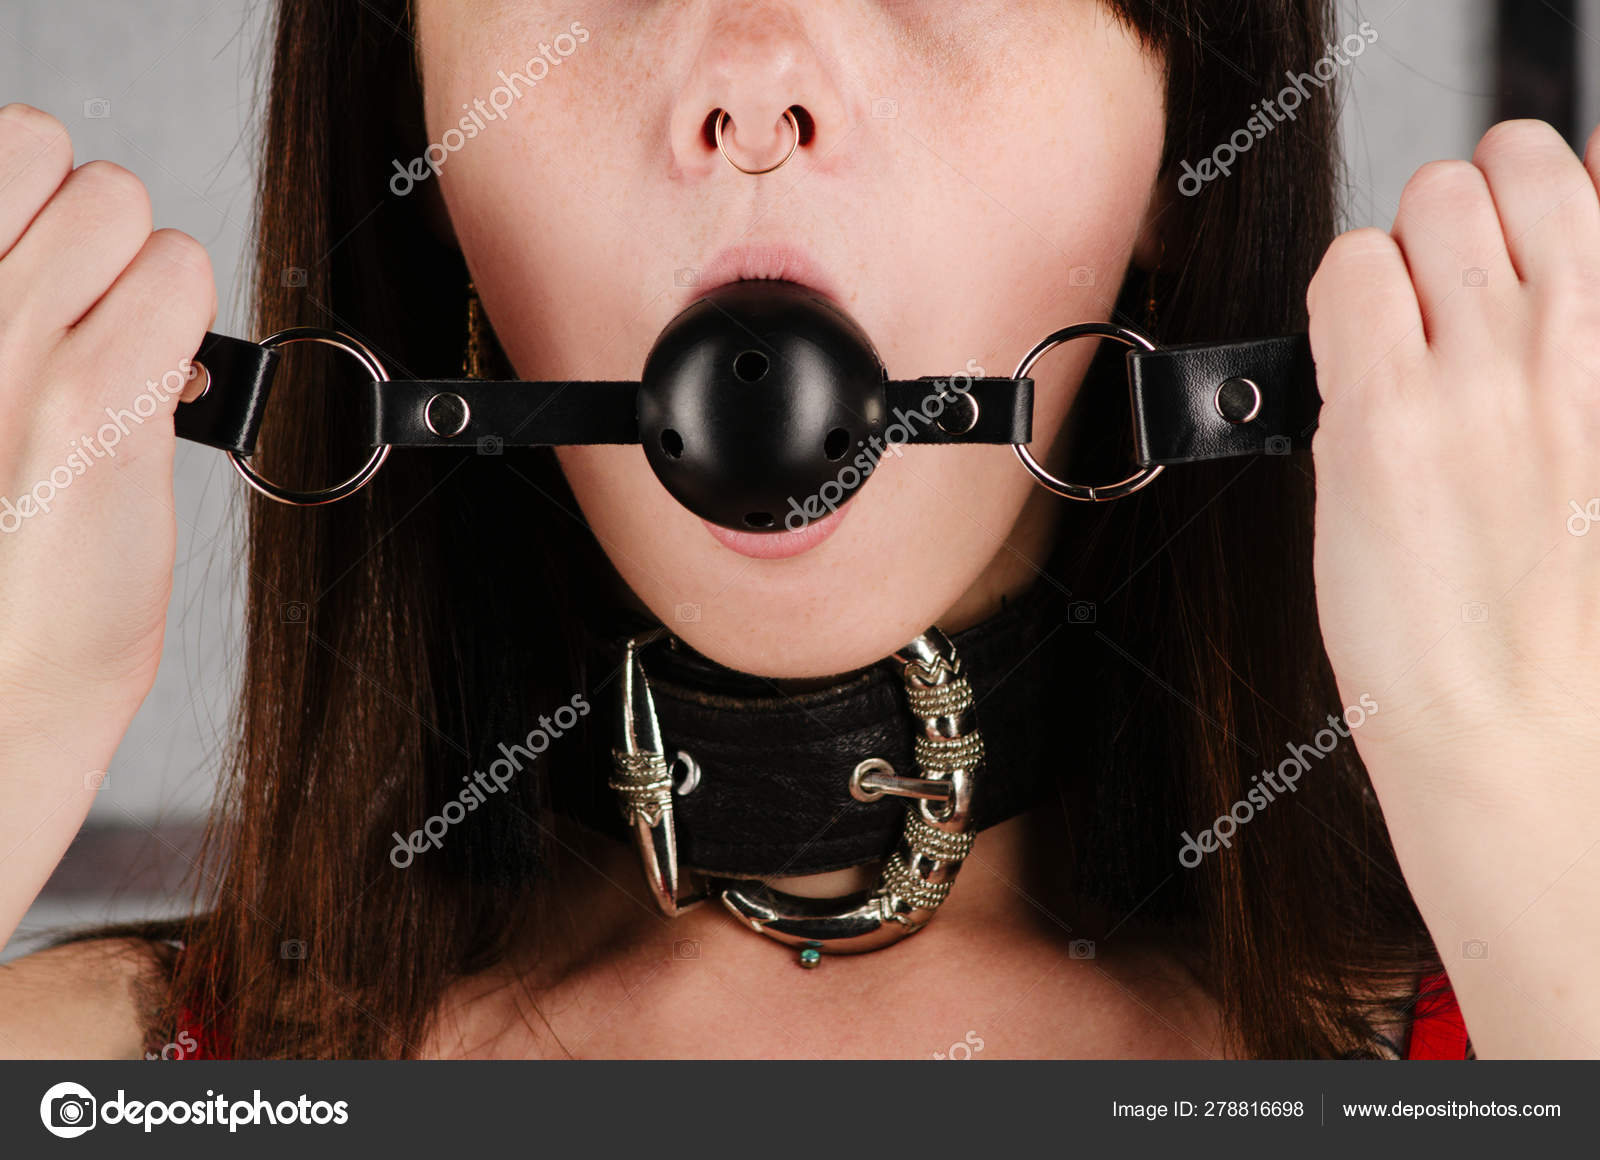 БДСМ костюм для взрослых секс-игр. Молодая женщина с воротником держит кляп  во рту . стоковое фото ©unomay 278816698